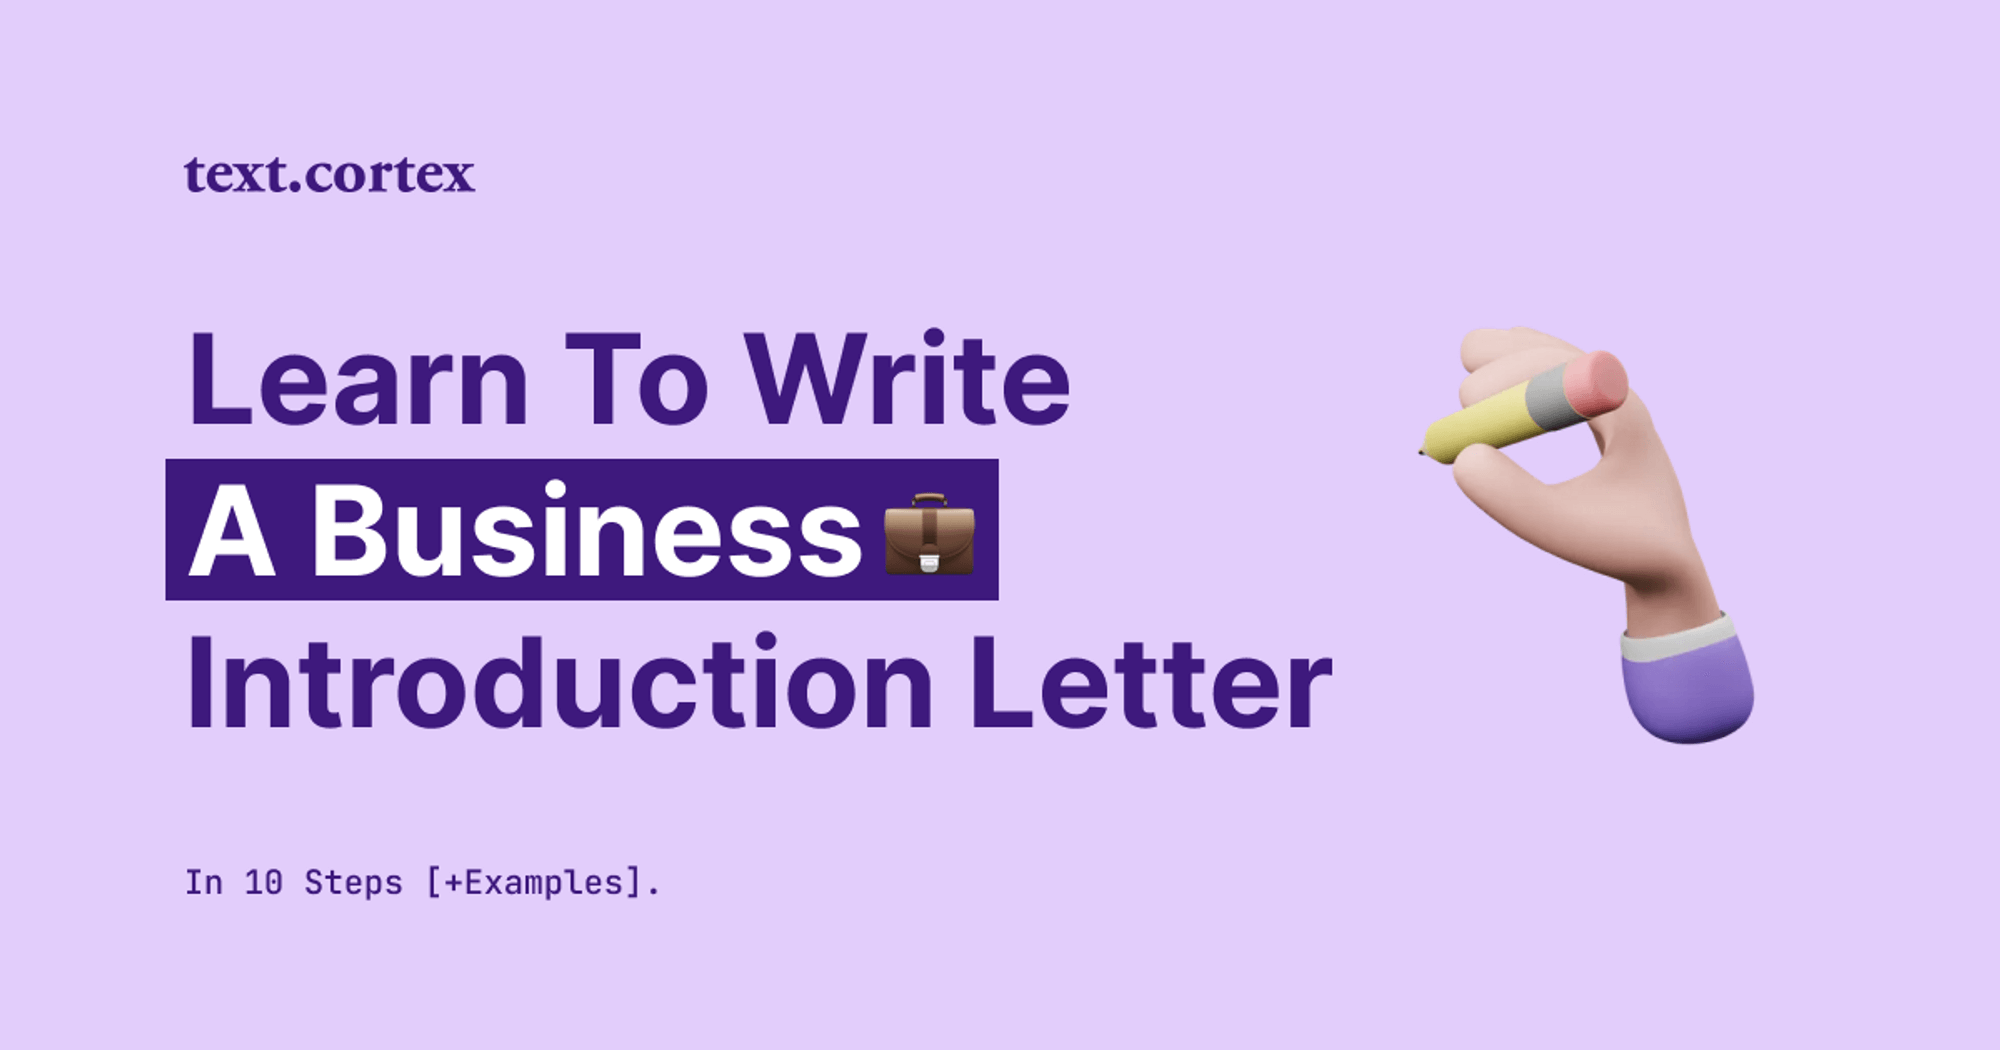 Cómo escribir una carta de presentación comercial en 10 pasos [+Ejemplos]